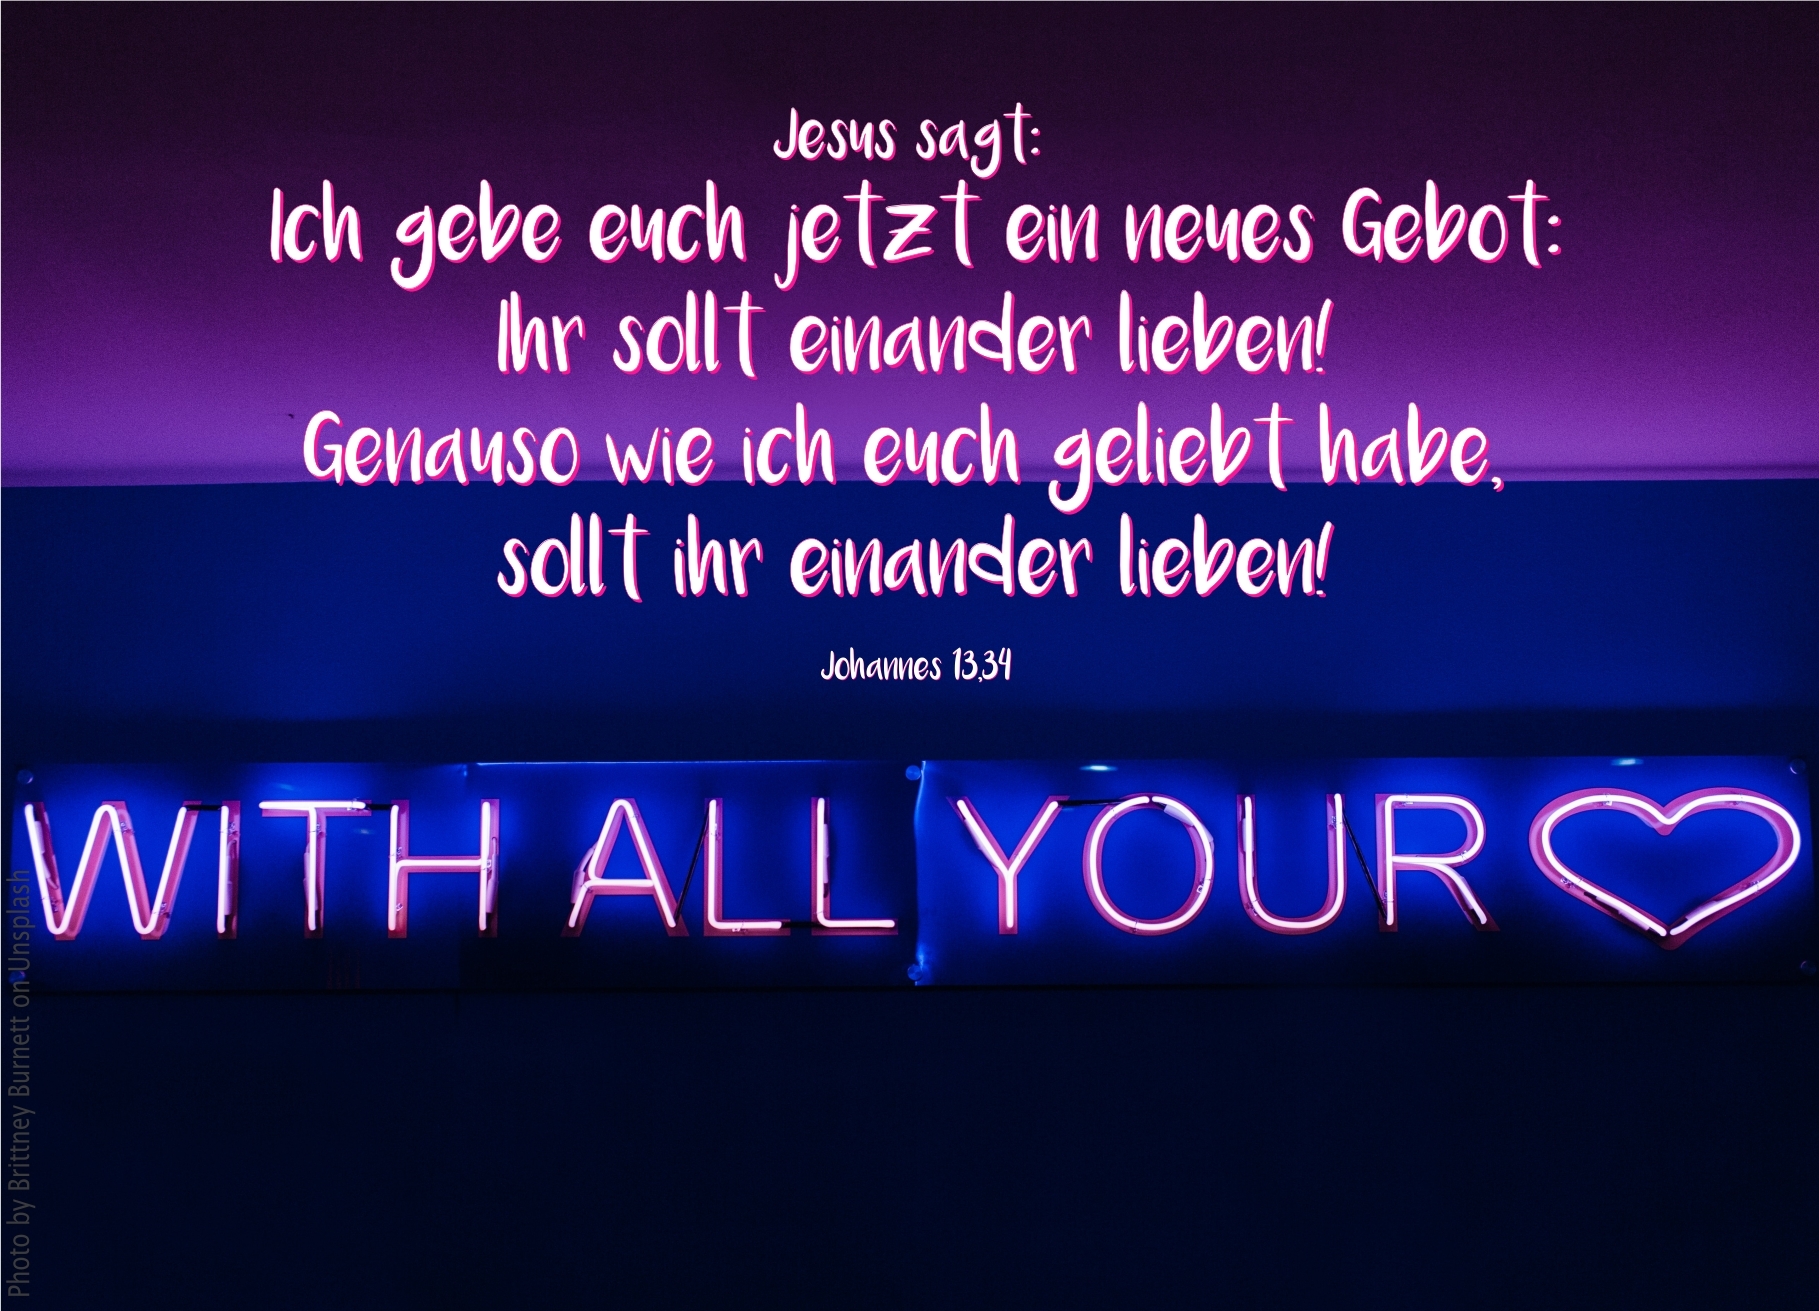 alt="leuchtschrift-with_all_your_heart_erwartet_bibelhoerbuch_das_neue_gebot"